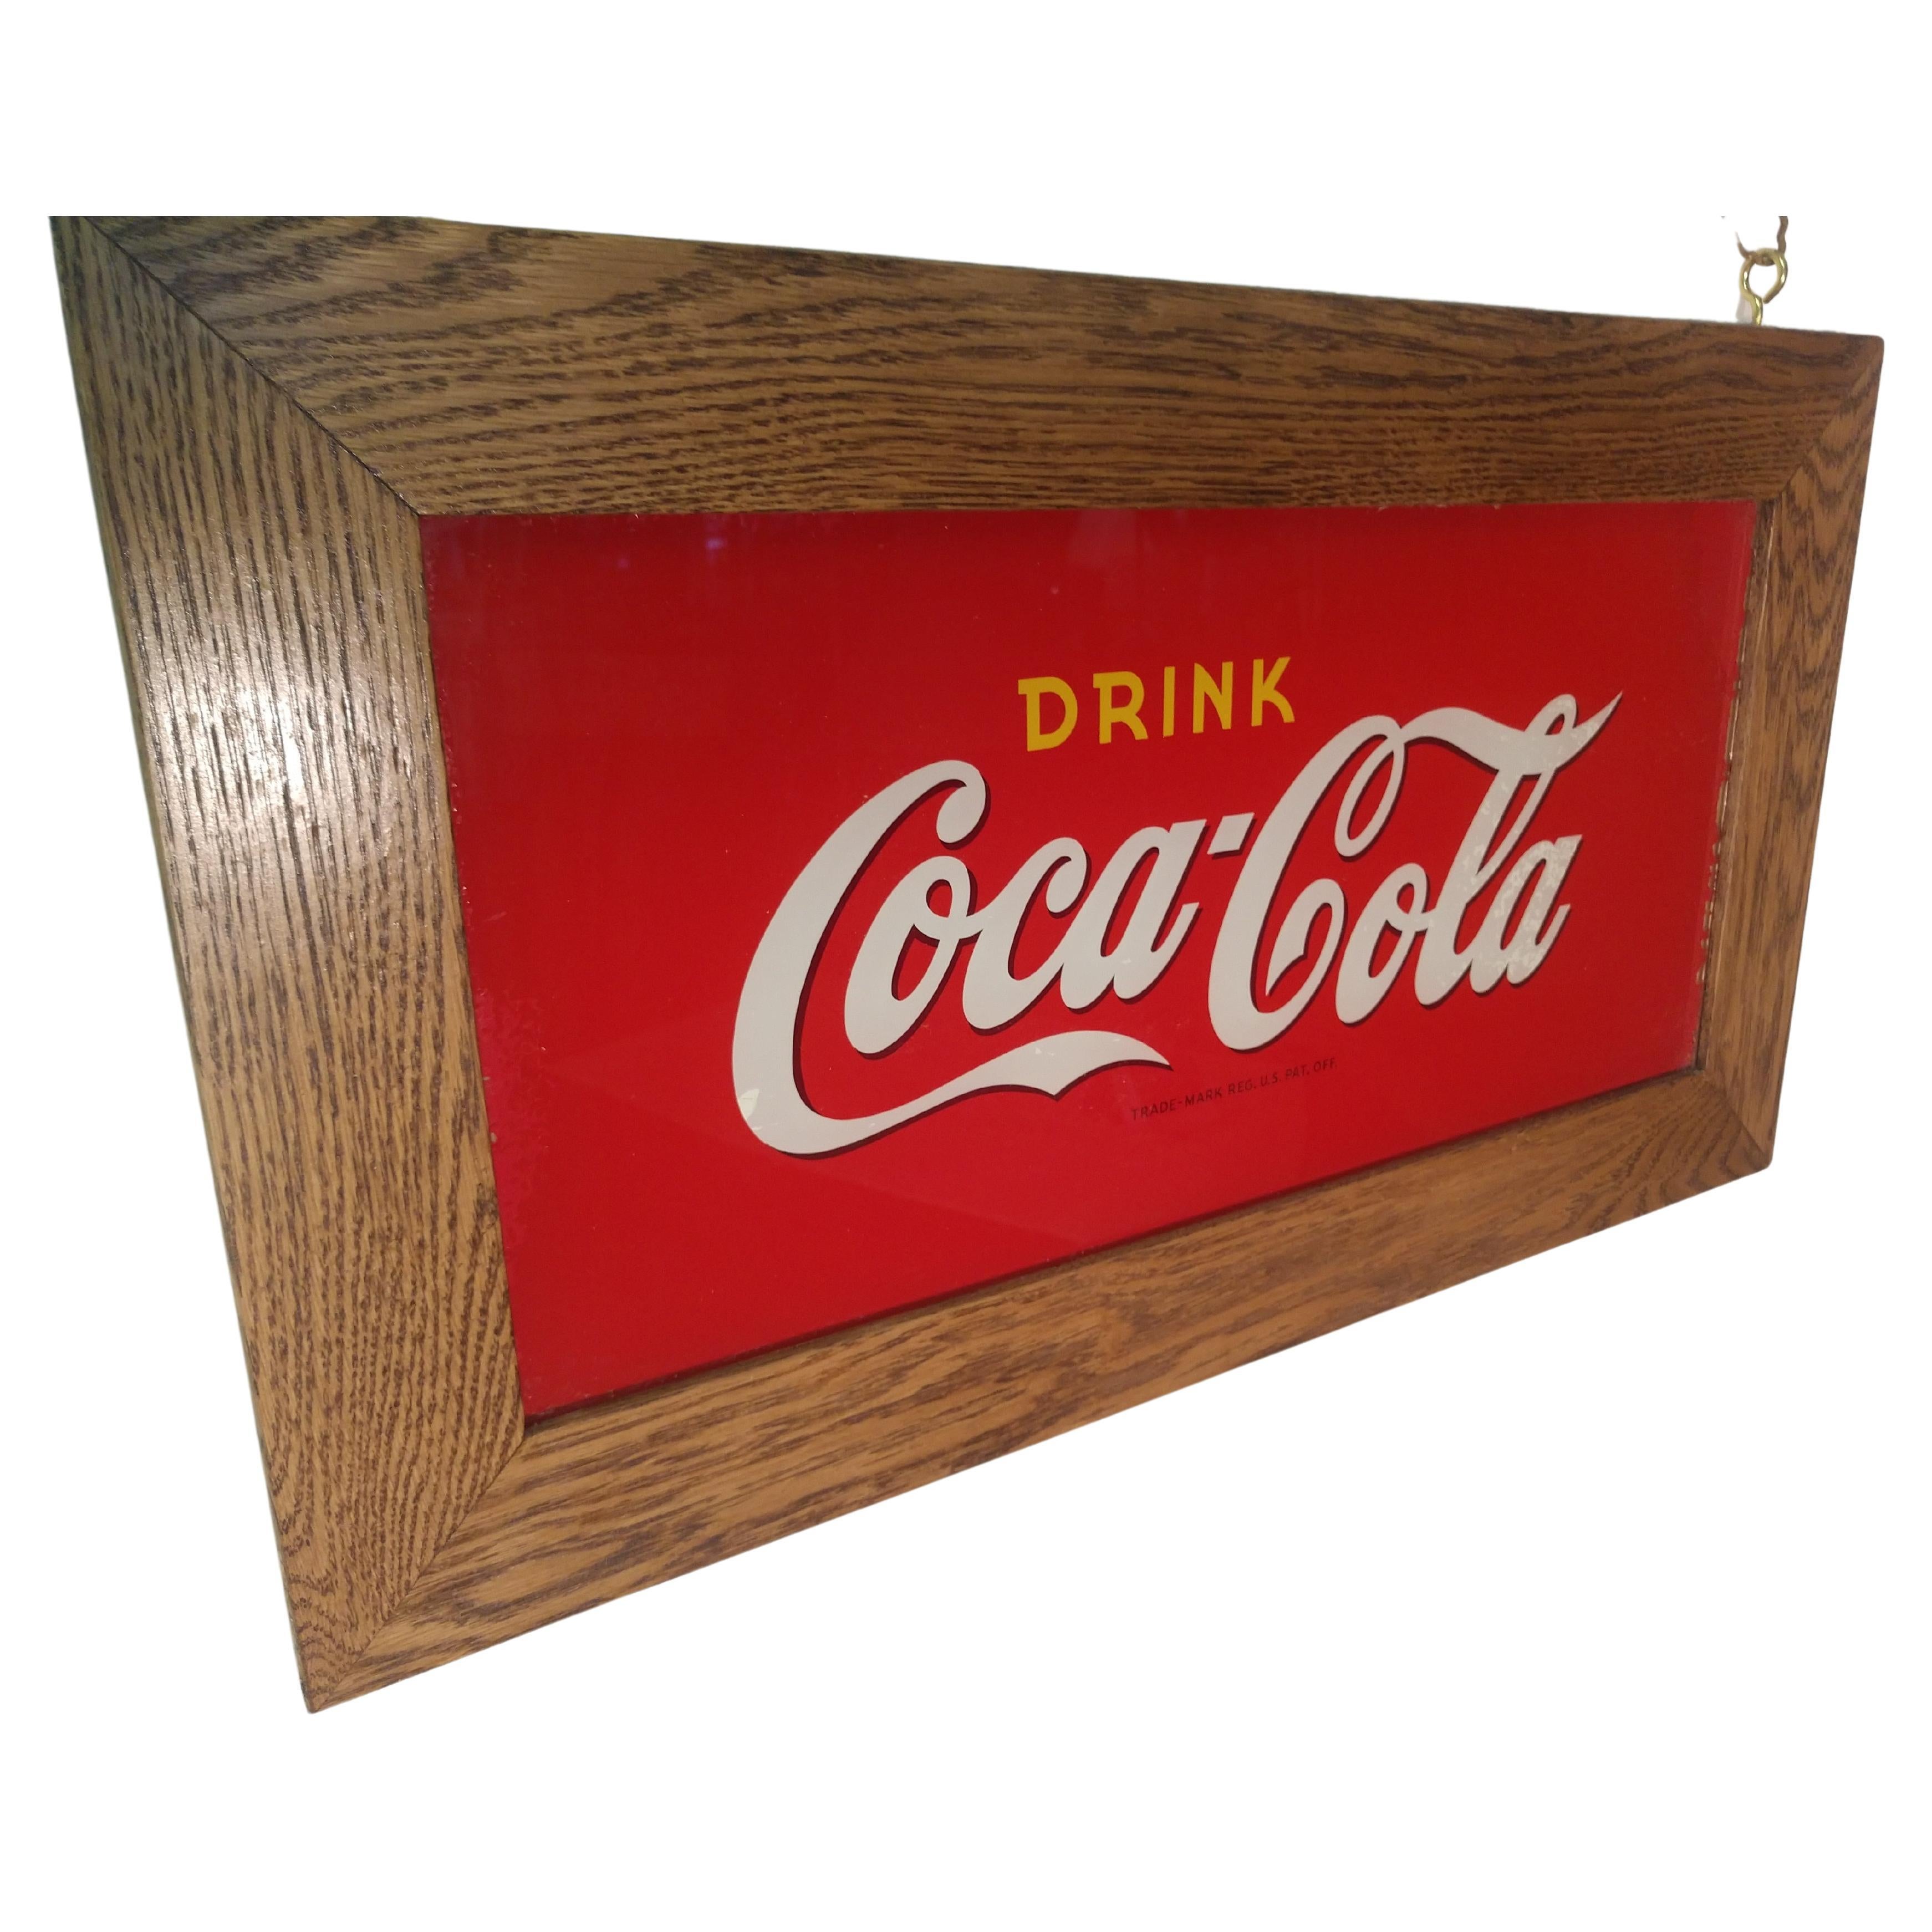 Fabuleuse enseigne de coca cola en verre 10 x 21, peinte à l'envers, datant des années vingt. En excellent état vintage avec un peu de fixation sur le coin supérieur droit. Fabriqué par les Price Bros. de Chicago pour la société d'embouteillage Coca